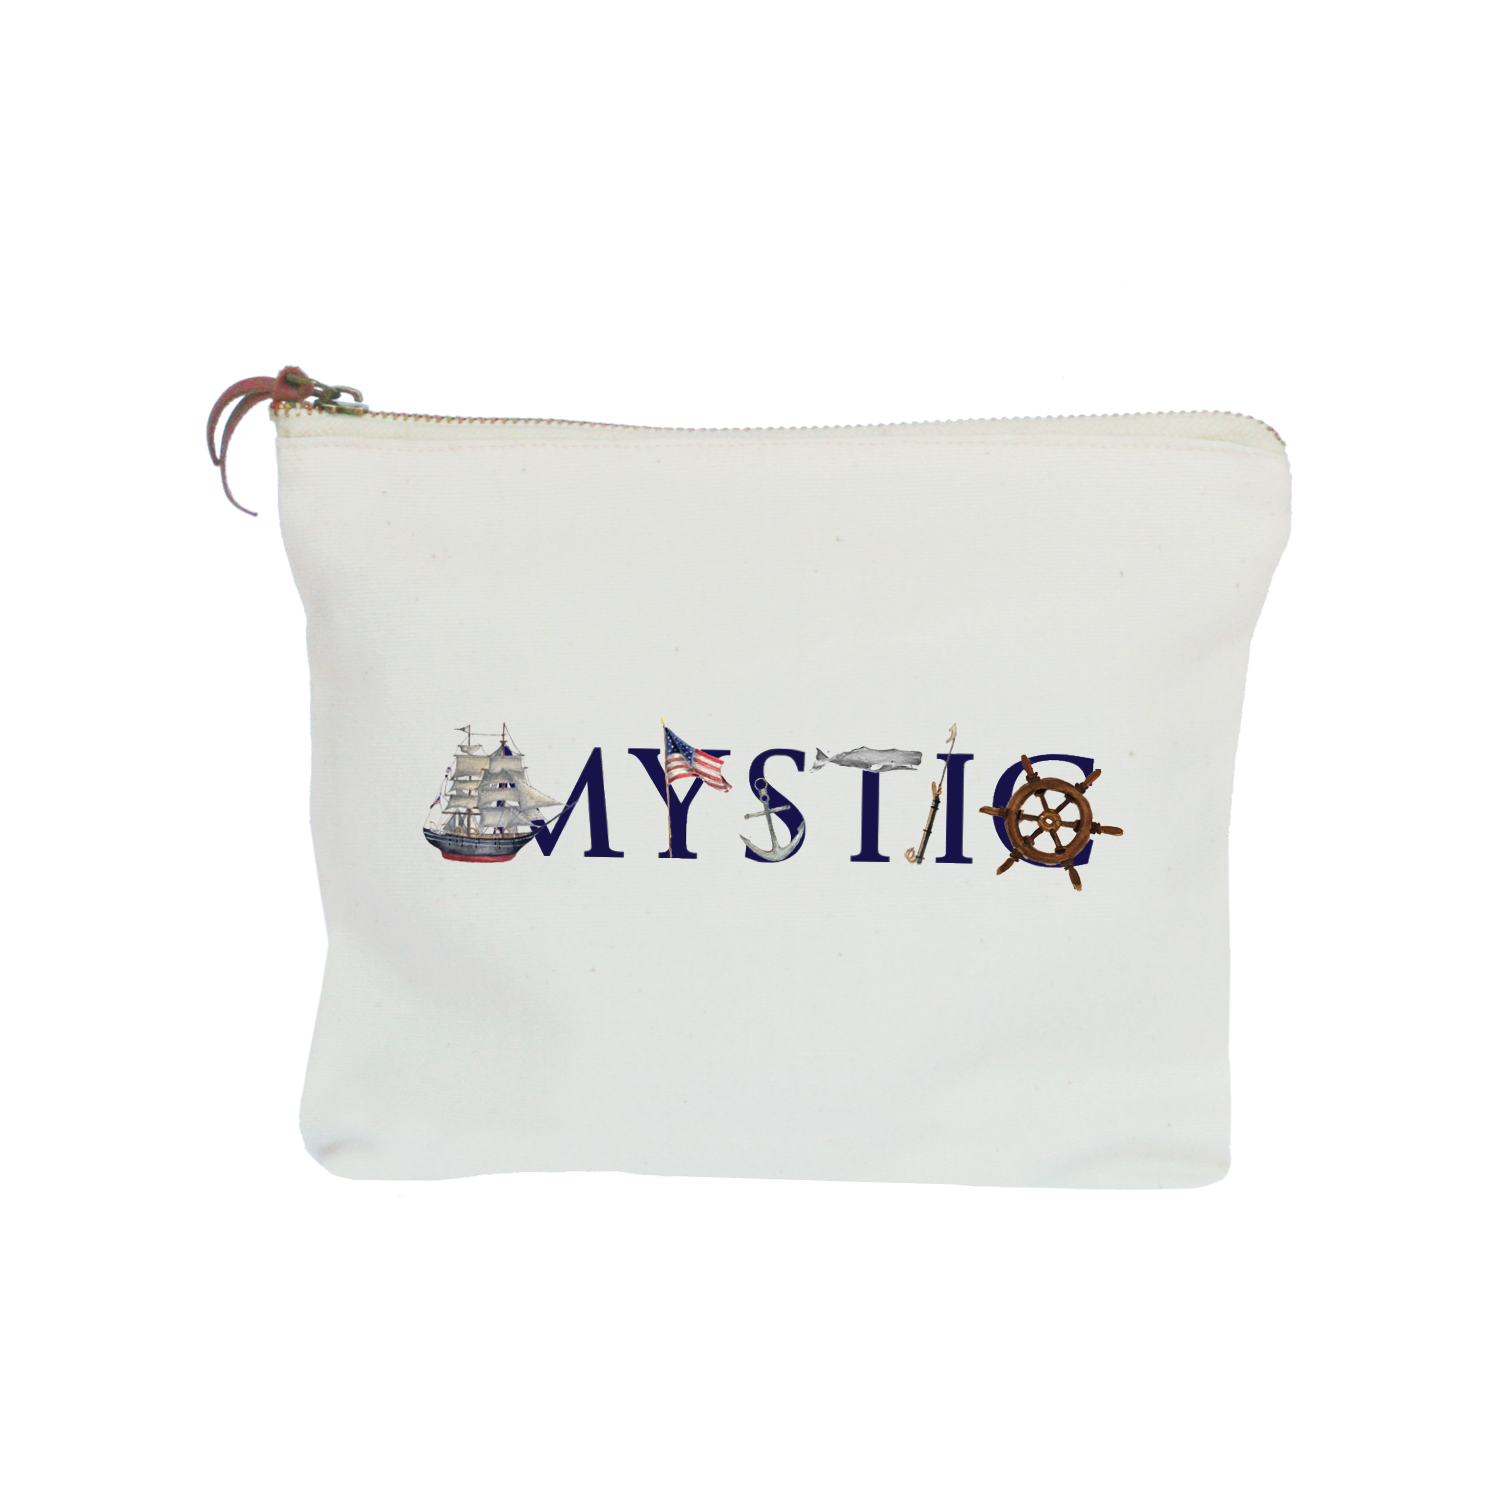 mystic zipper pouch